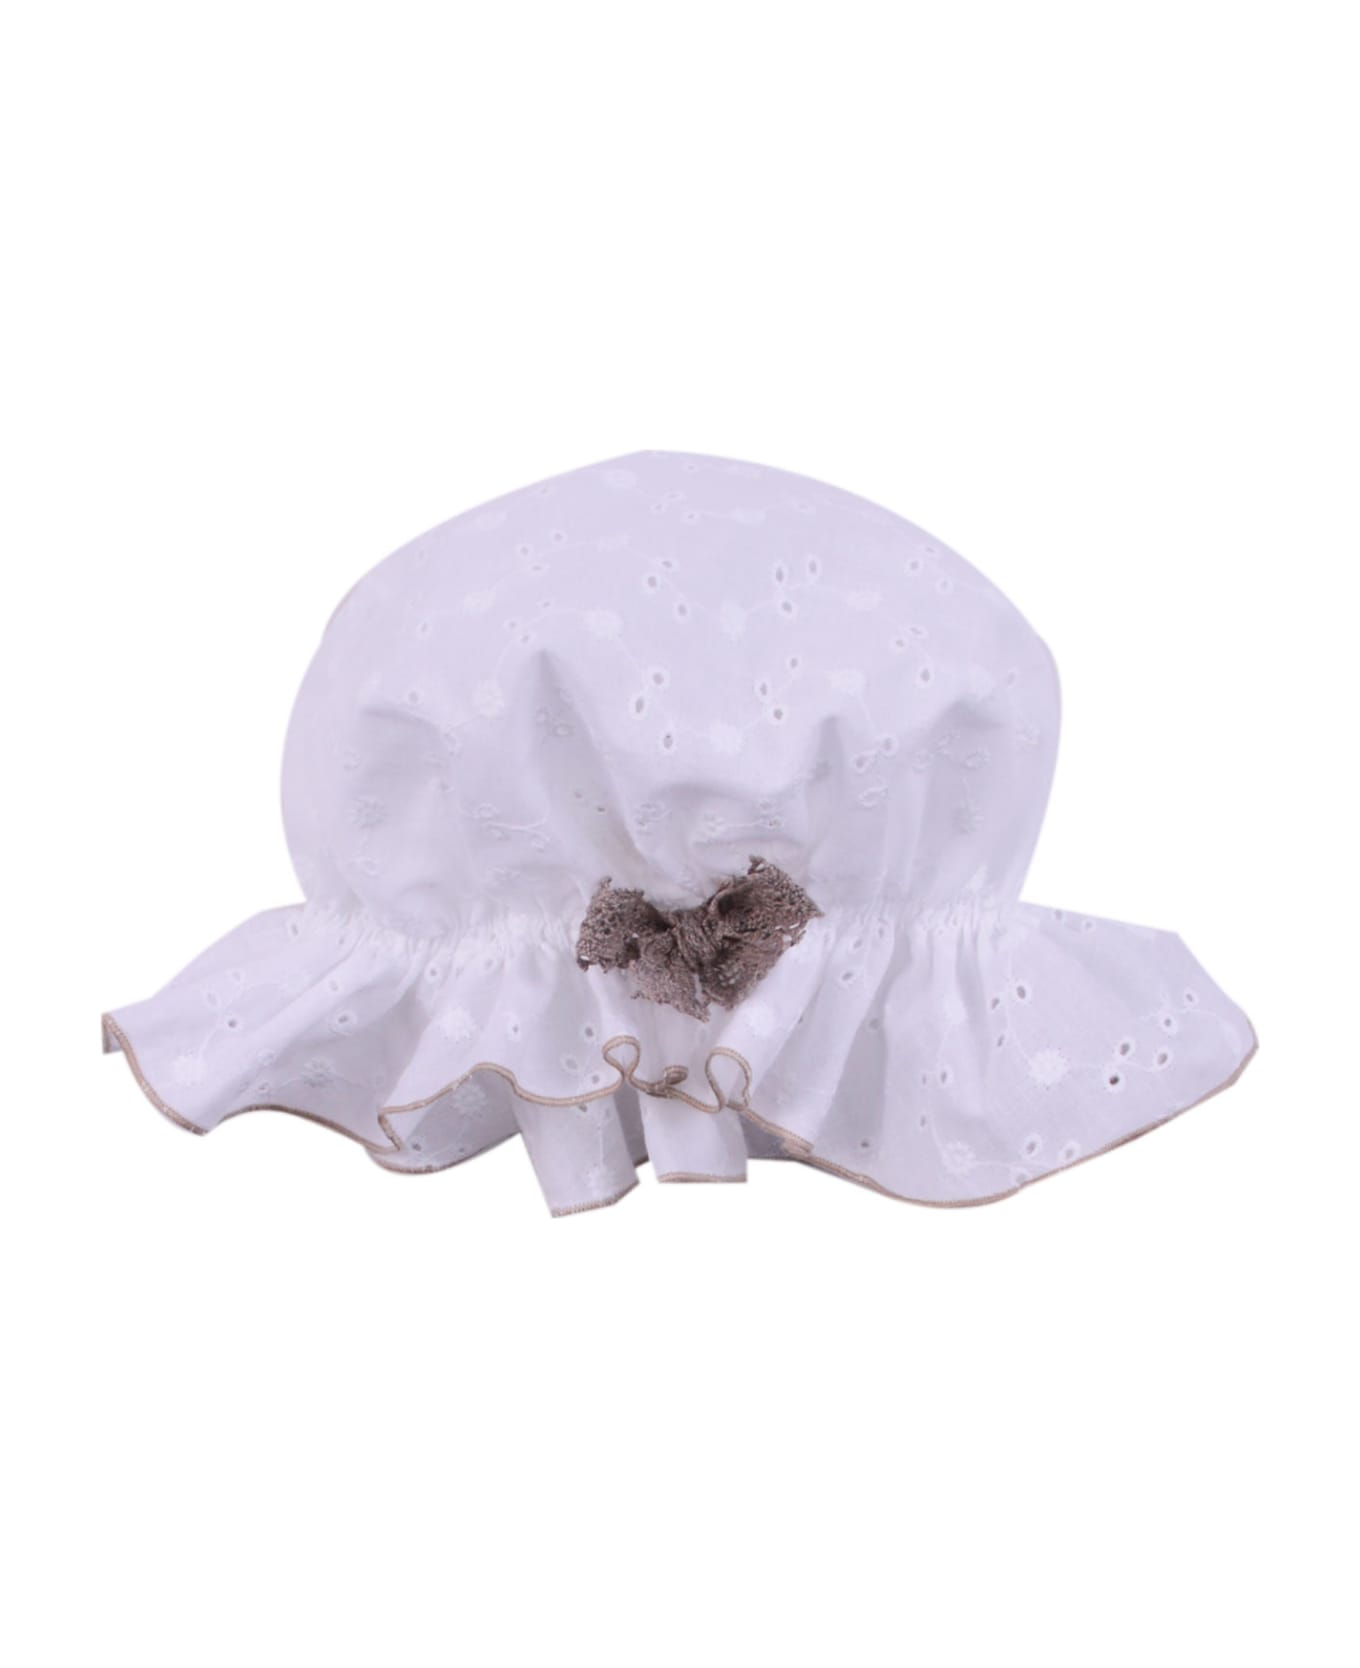 La stupenderia Cotton Hat - White